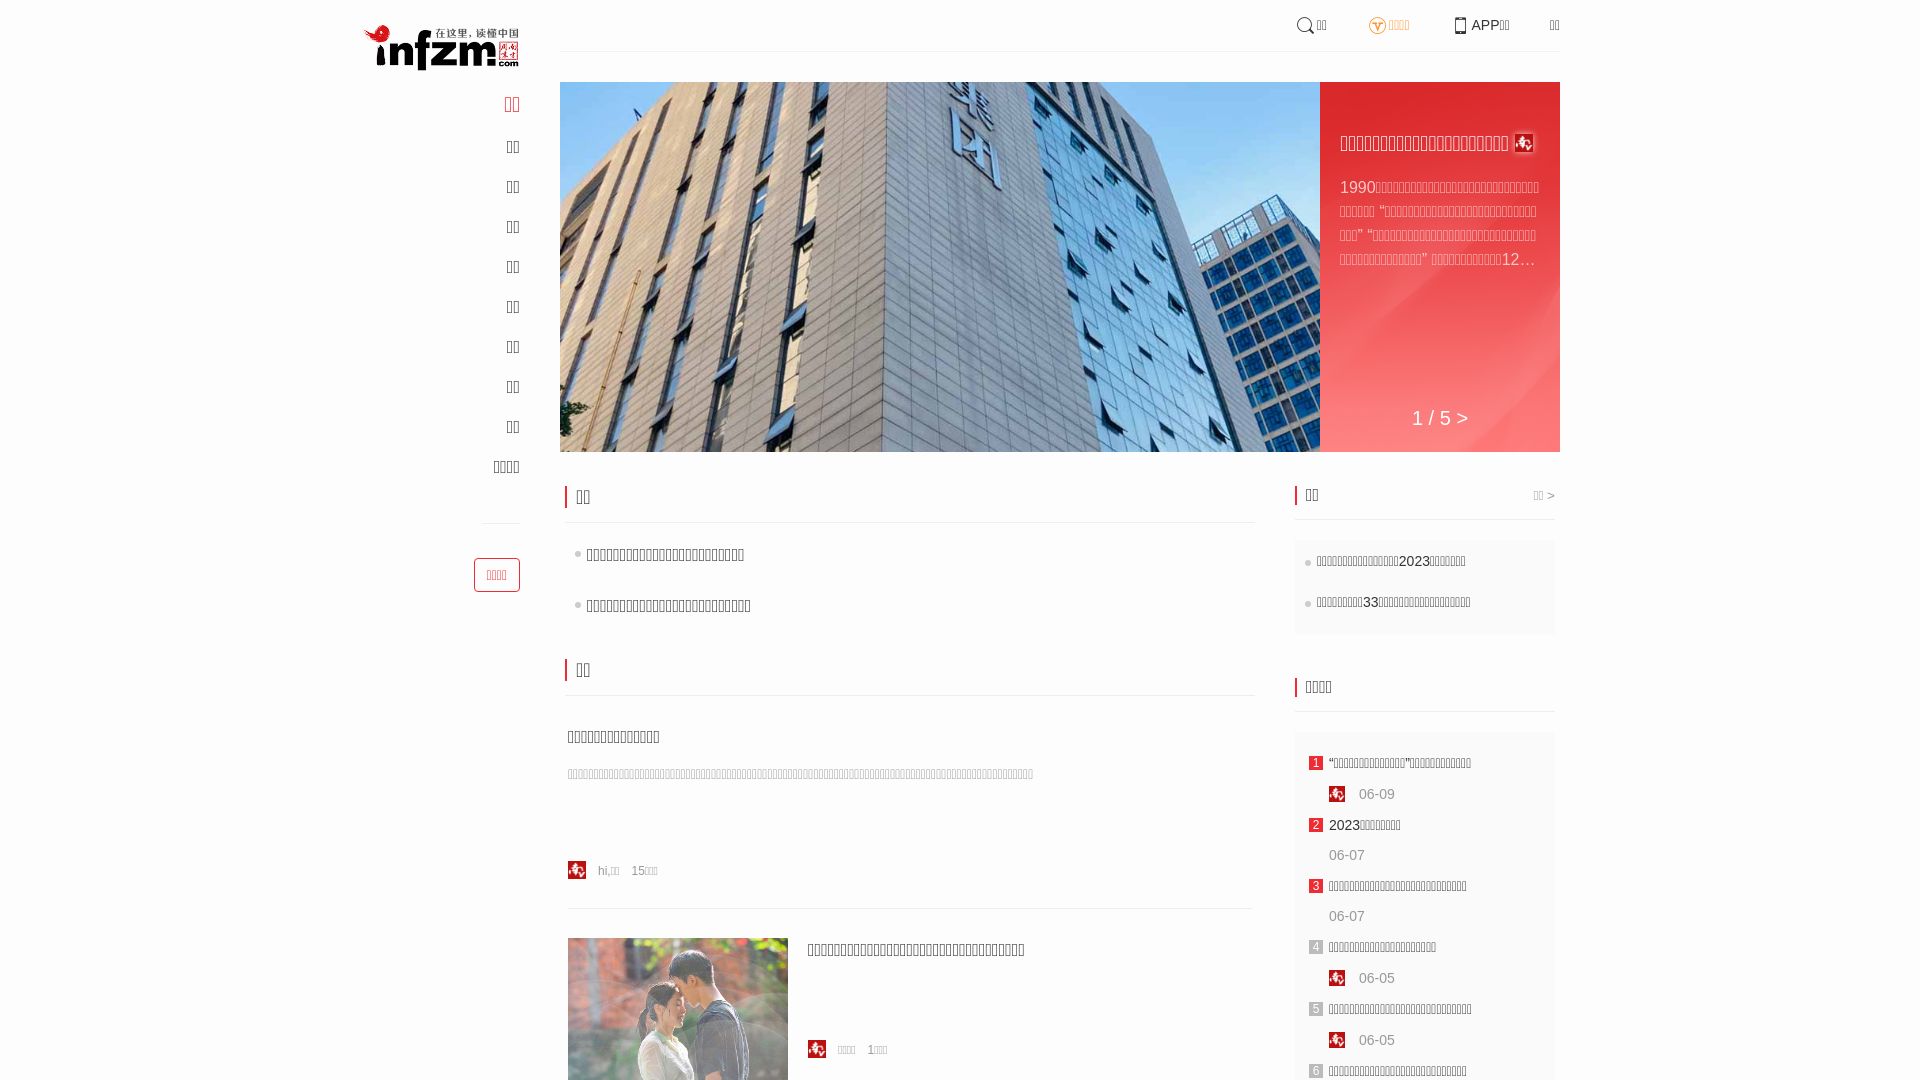 Website status infzm.com is   ONLINE